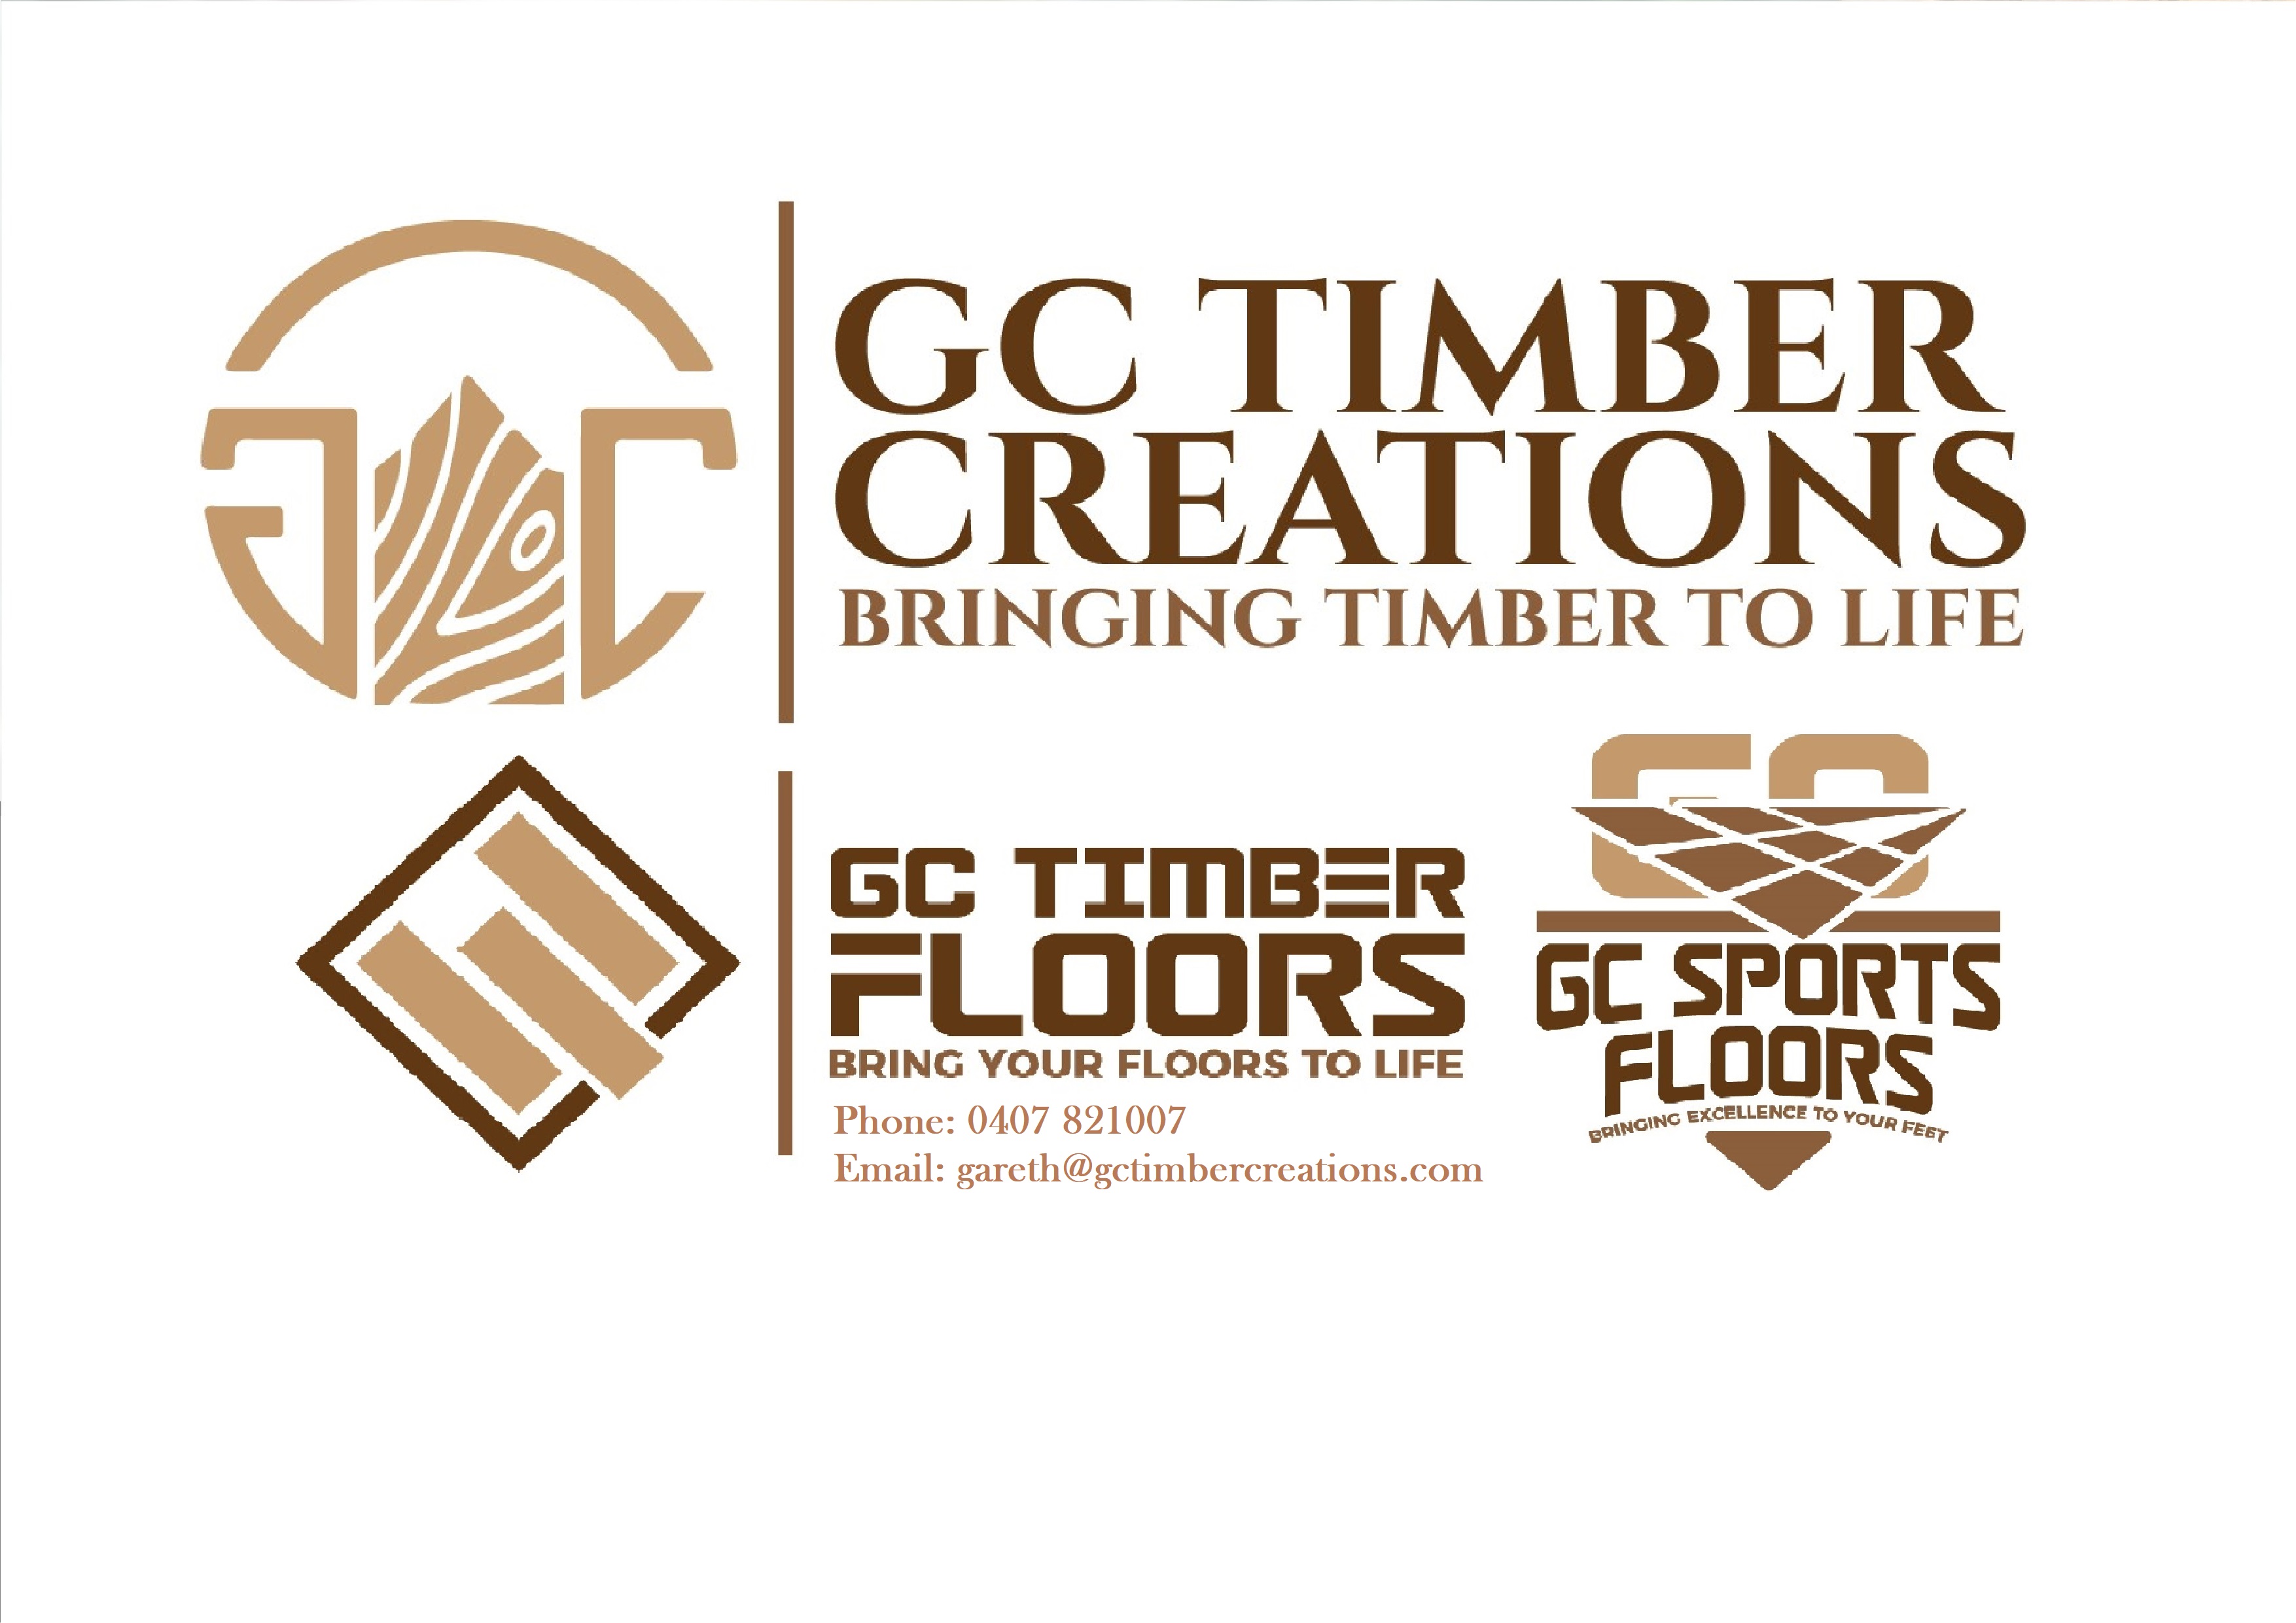 GC Timber Creations